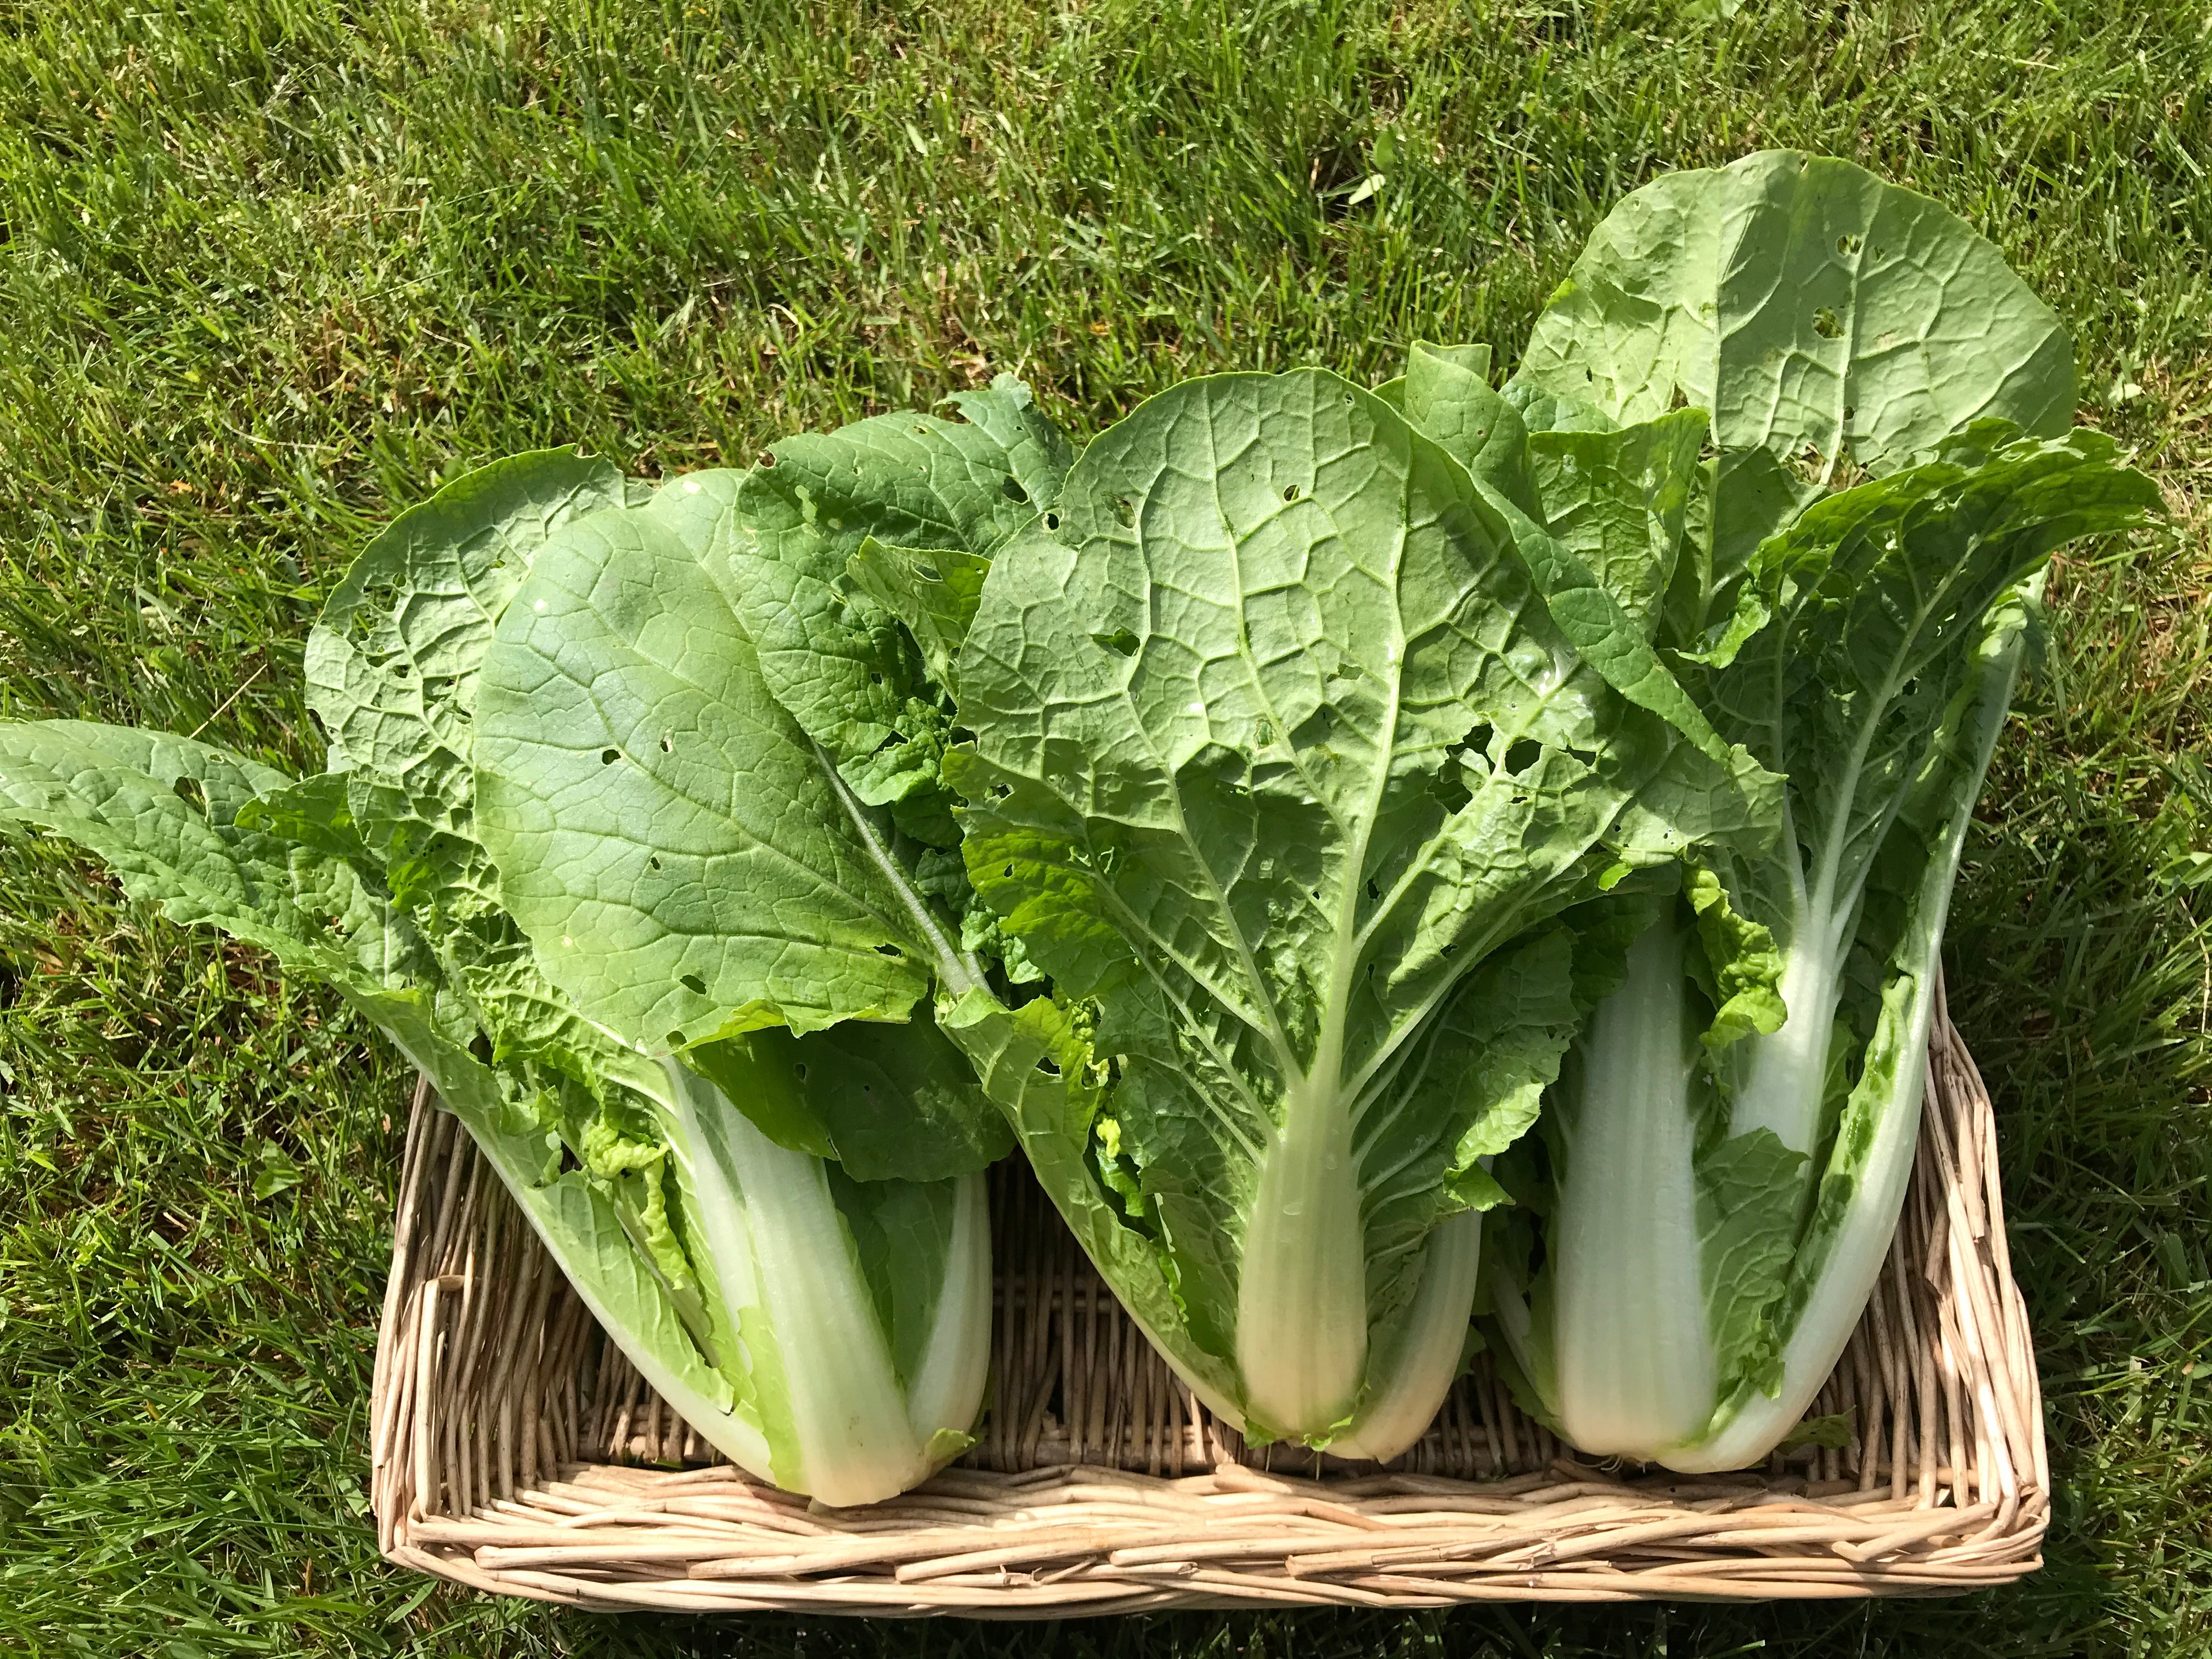 Napa Cabbage (per lb)